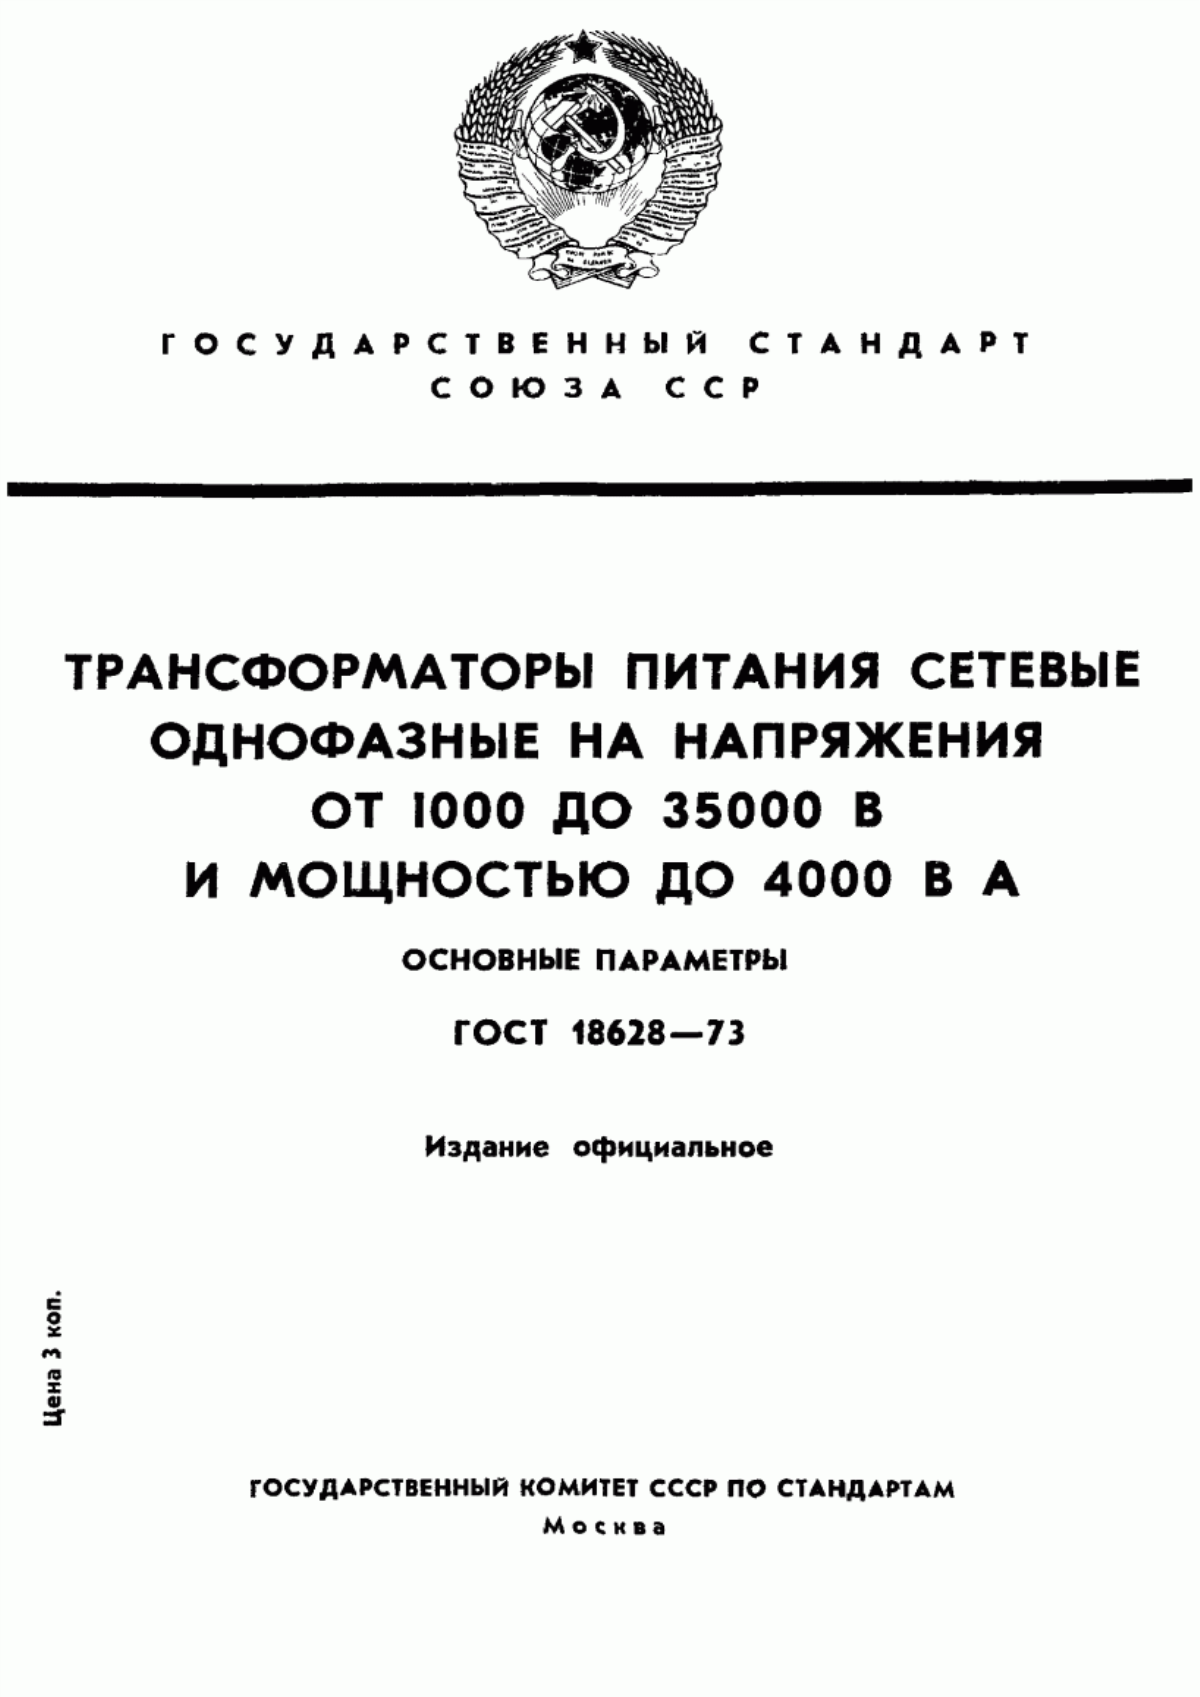 ГОСТ 18628-73 Трансформаторы питания сетевые однофазные на напряжения от 1000 до 35000 В и мощностью до 4000 В х А. Основные параметры